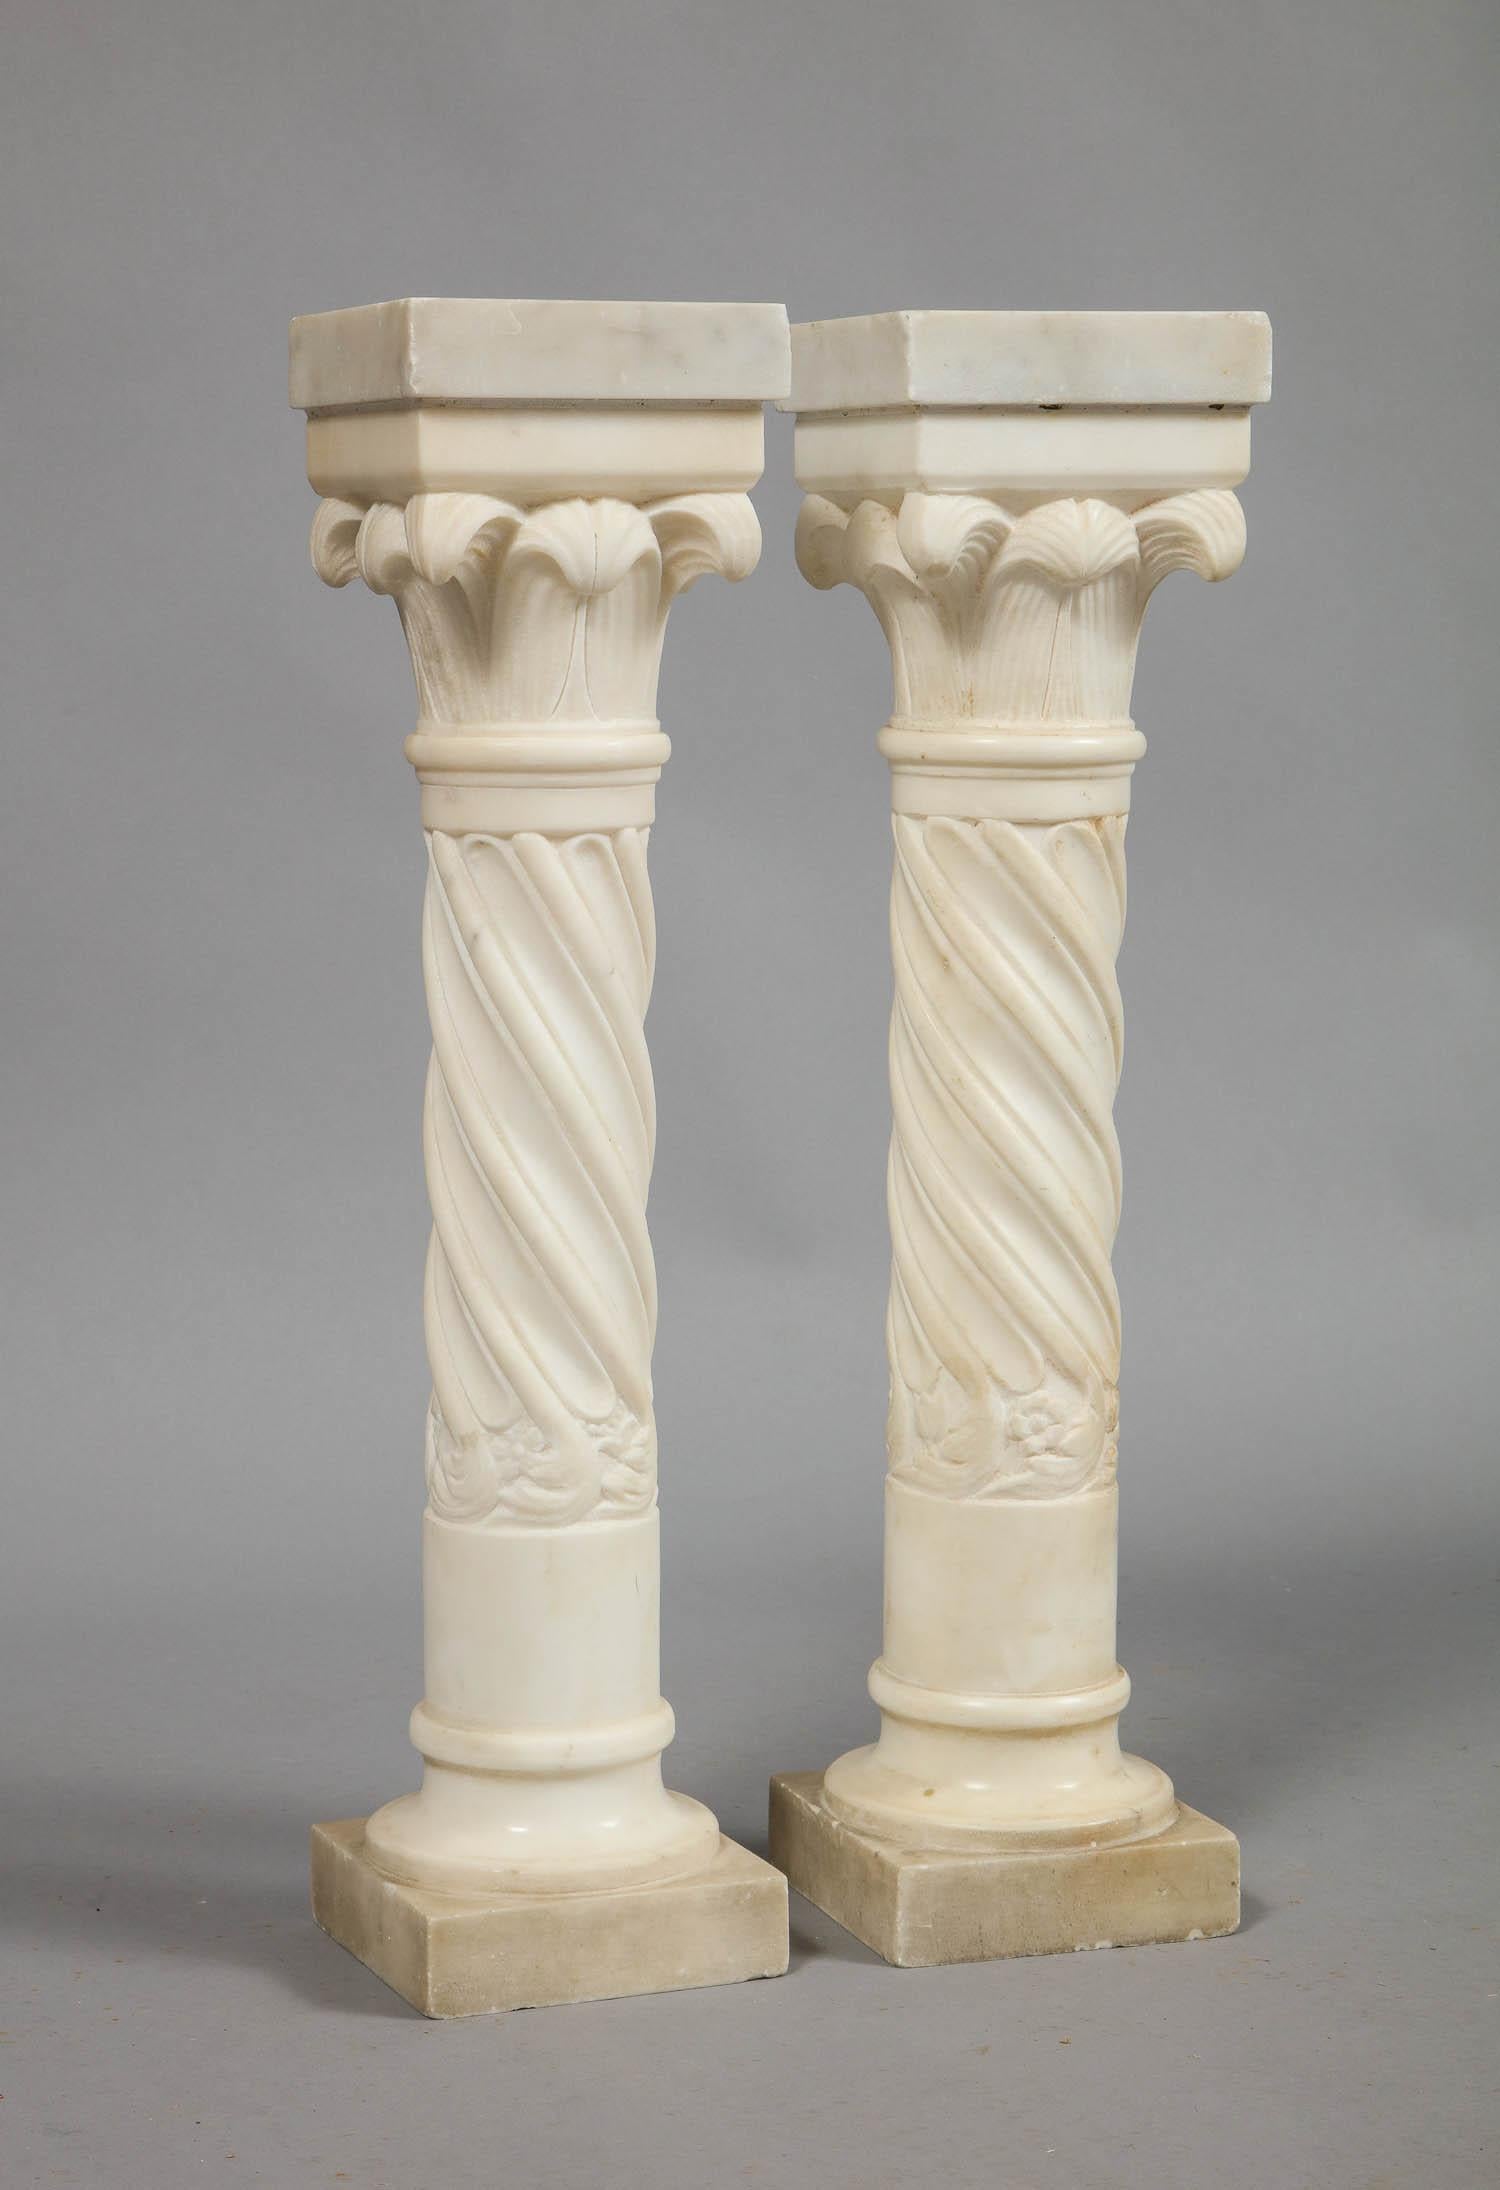 Une paire de colonnes en marbre blanc avec des fûts torsadés et des chapiteaux feuillagés, peut-être de Stanford Whiting ou Addison Meisner. À utiliser comme accessoires décoratifs ou à transformer en lampes.